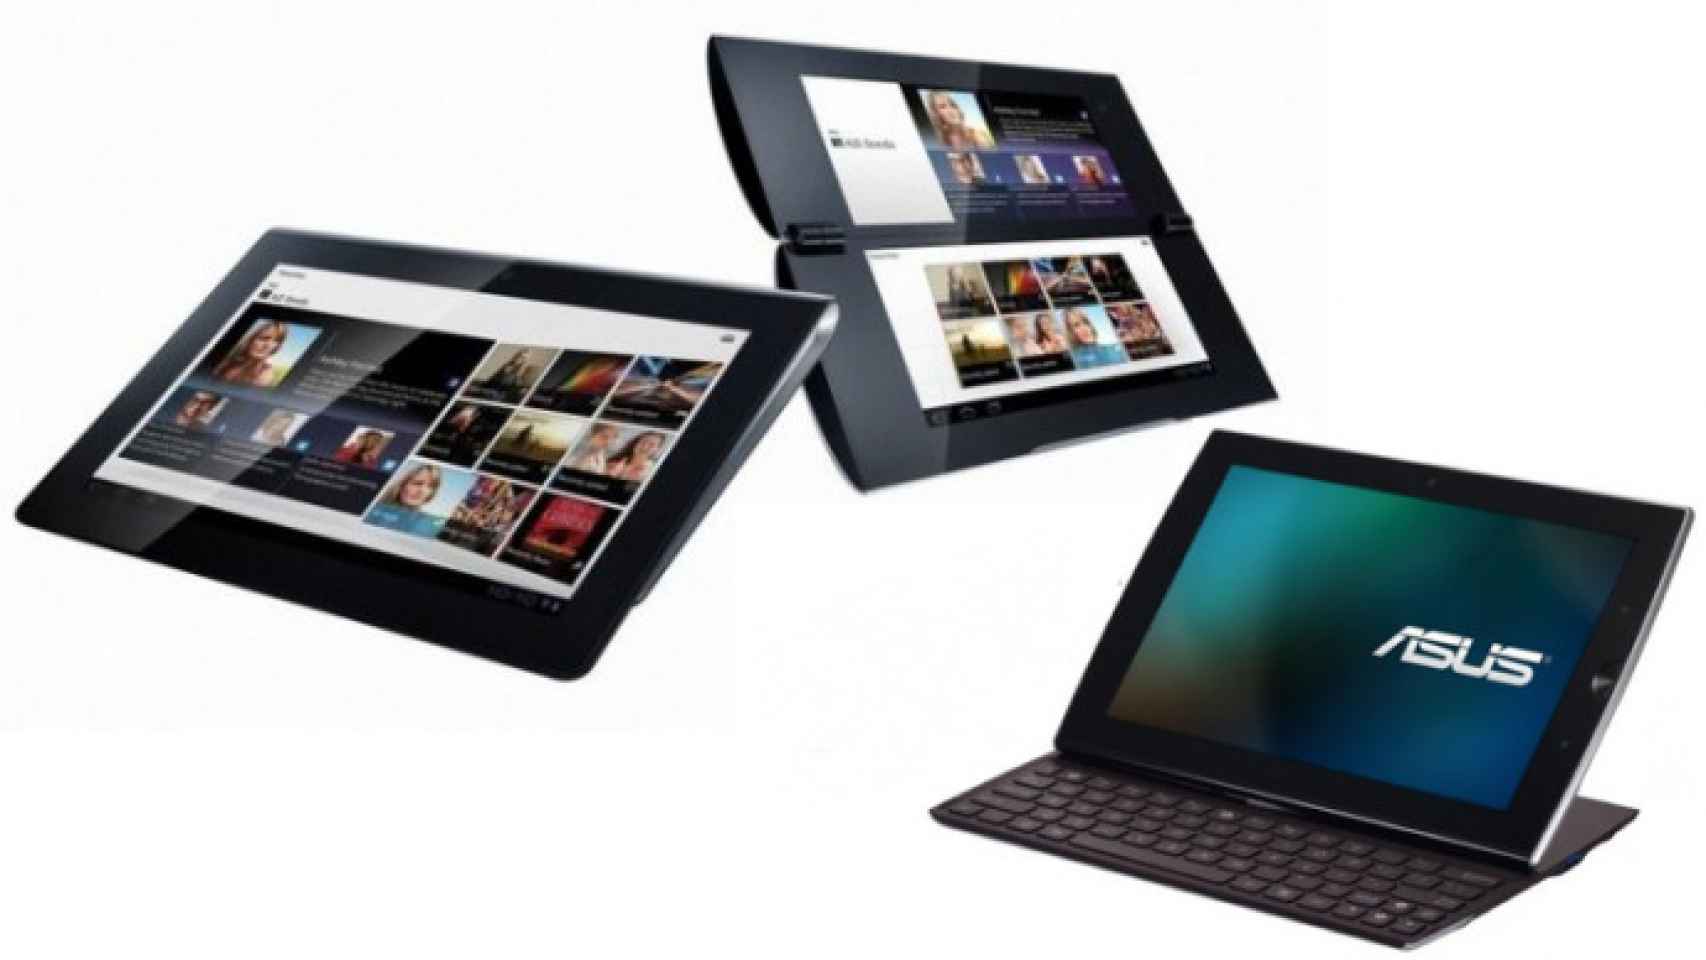 Sony Tablet S y Asus Eee Pad Slider, fechas y precios ya en España